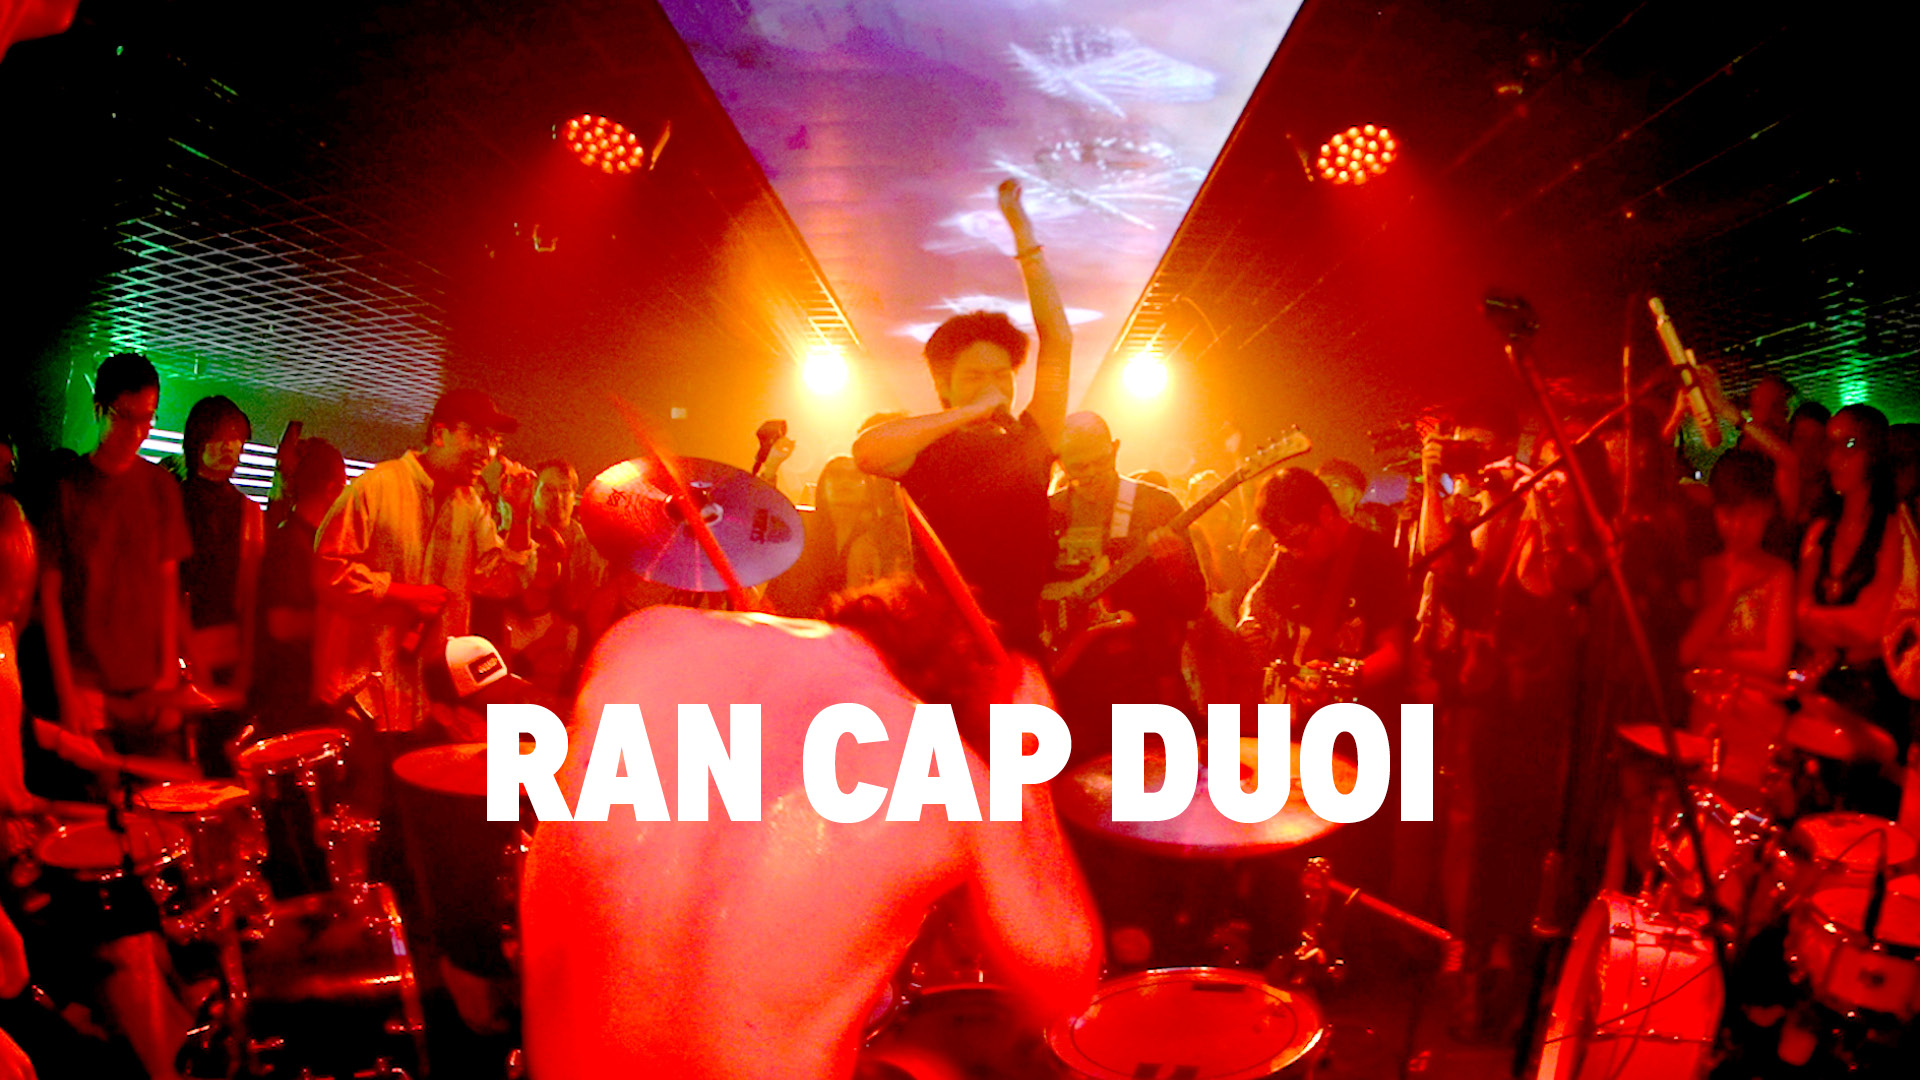 Ran Cap Duoi 2